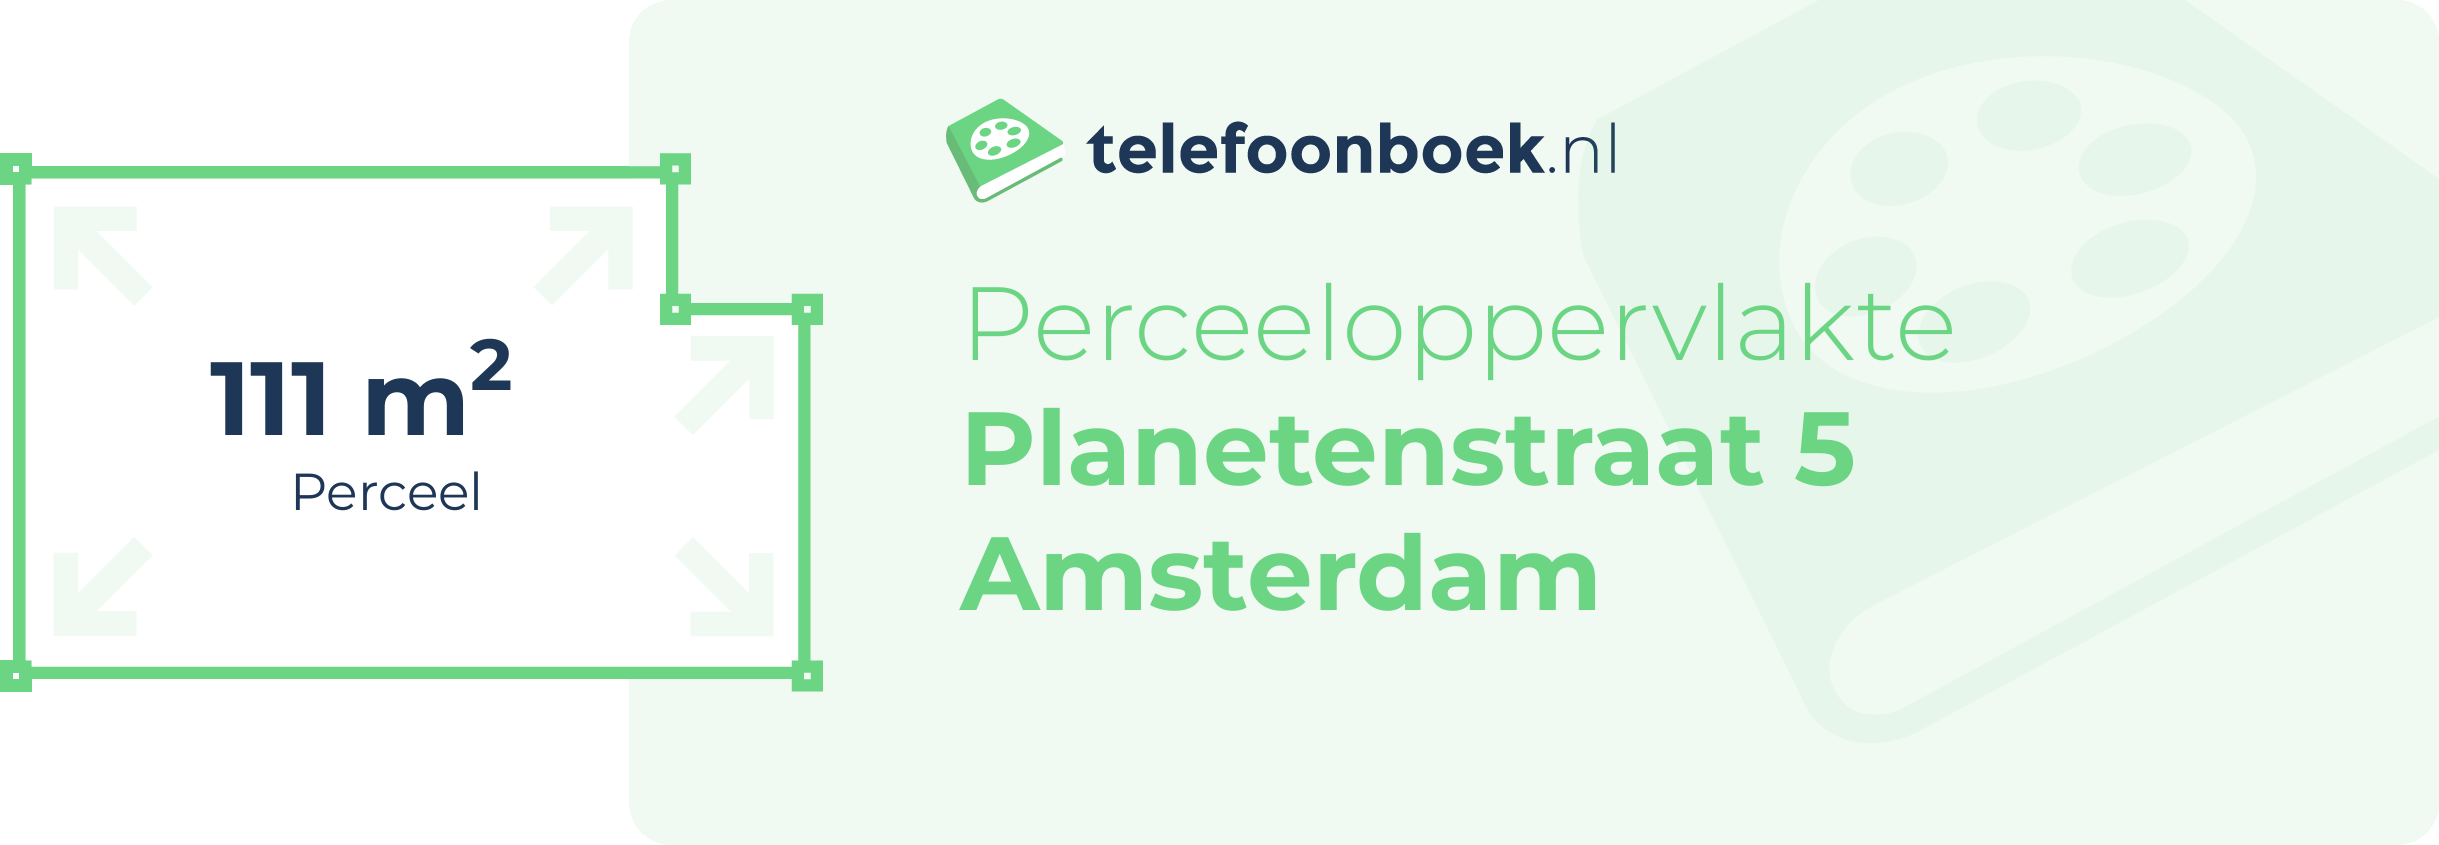 Perceeloppervlakte Planetenstraat 5 Amsterdam